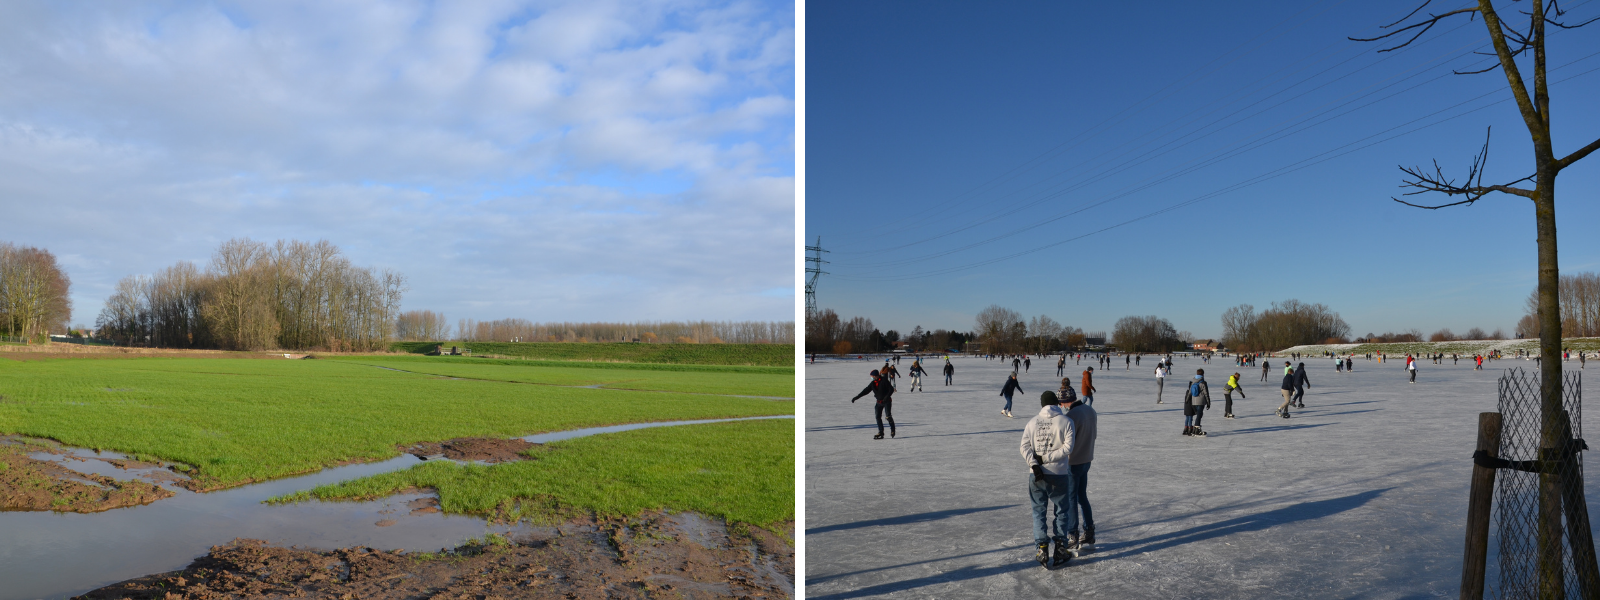 À gauche : la transformation du Bleukensweide en zone inondable ; à droite : le Bleukensweide métamorphosé en patinoire